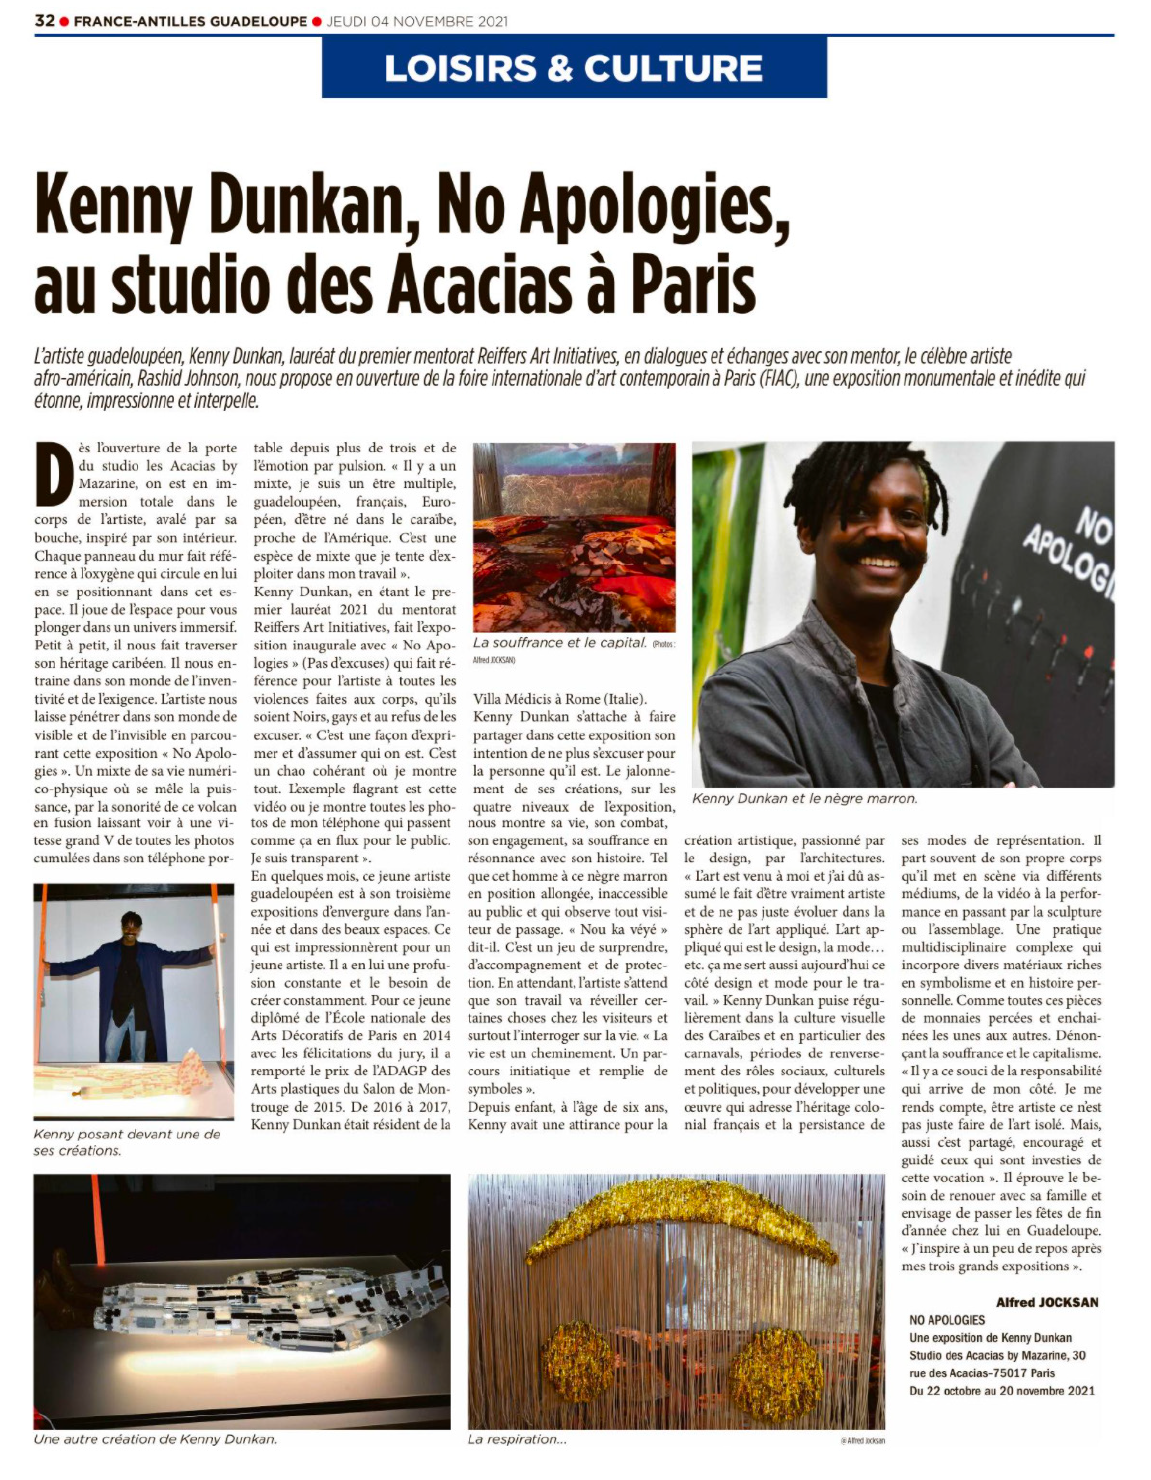 Kenny Dunkan, No Apologies, au Studio des Acacias à Paris